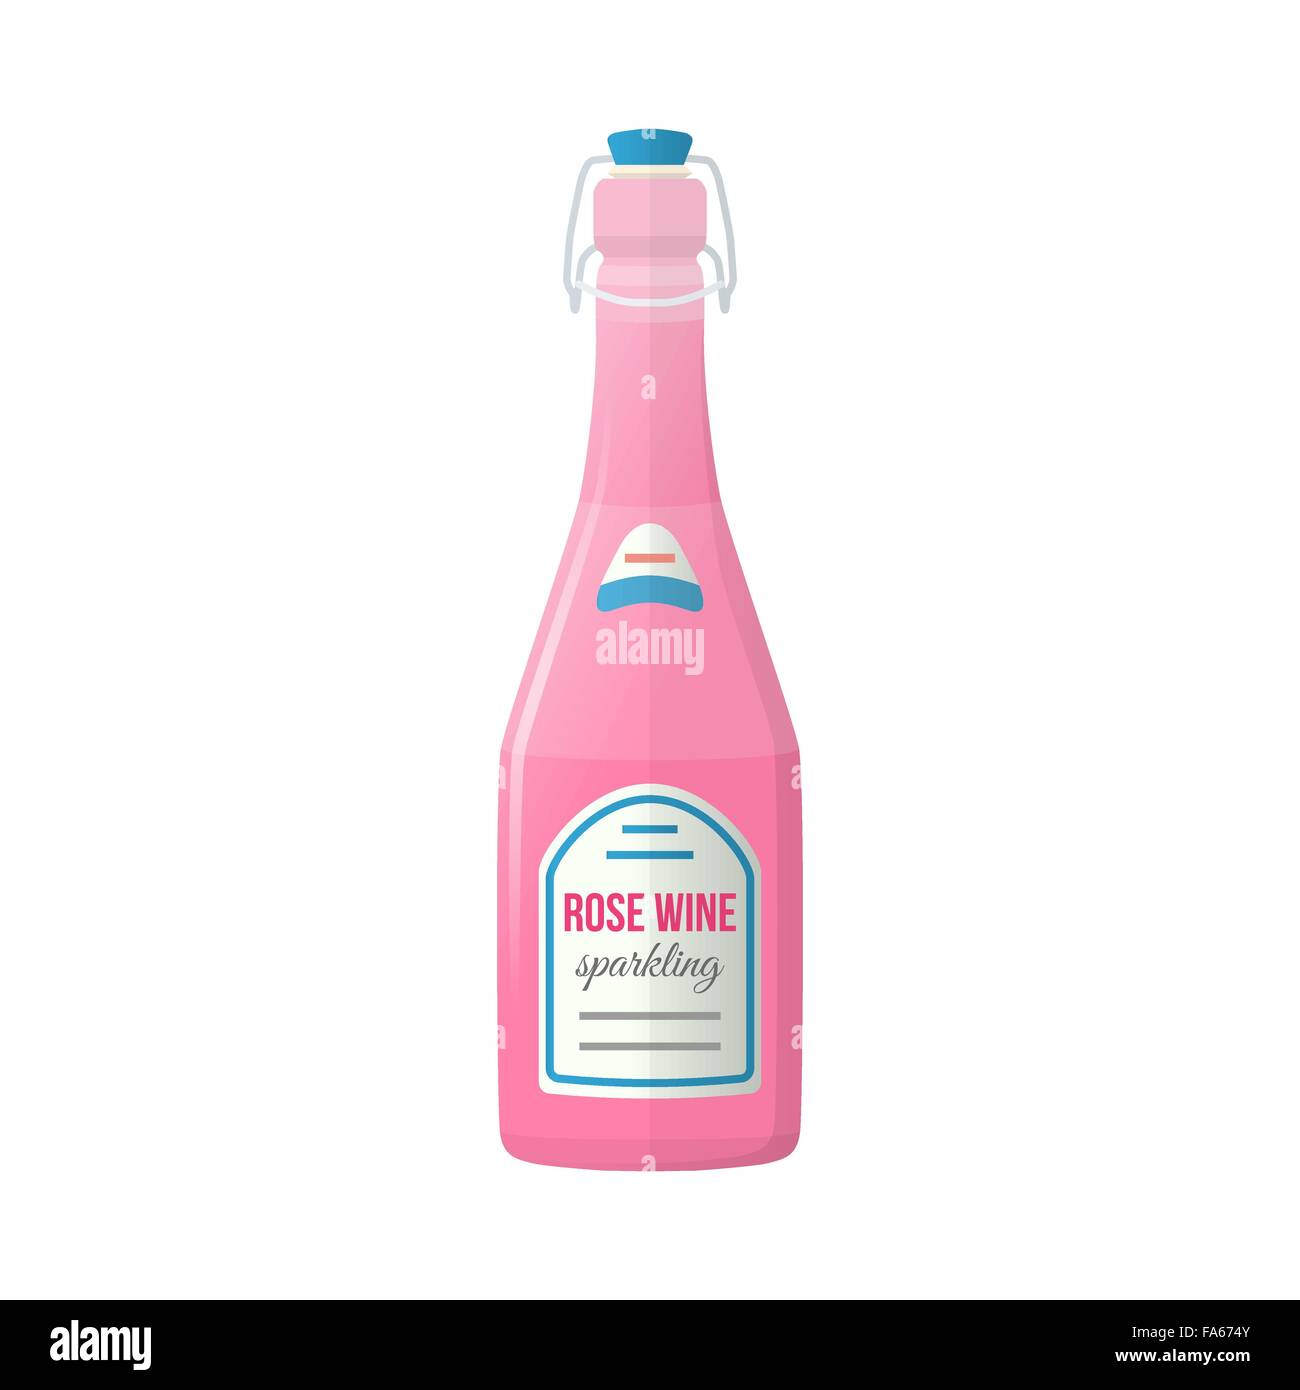 Vector design plat couleur rose rose vin mousseux bouteille bouchon éclair avec label illustration isolé sur fond blanc Illustration de Vecteur